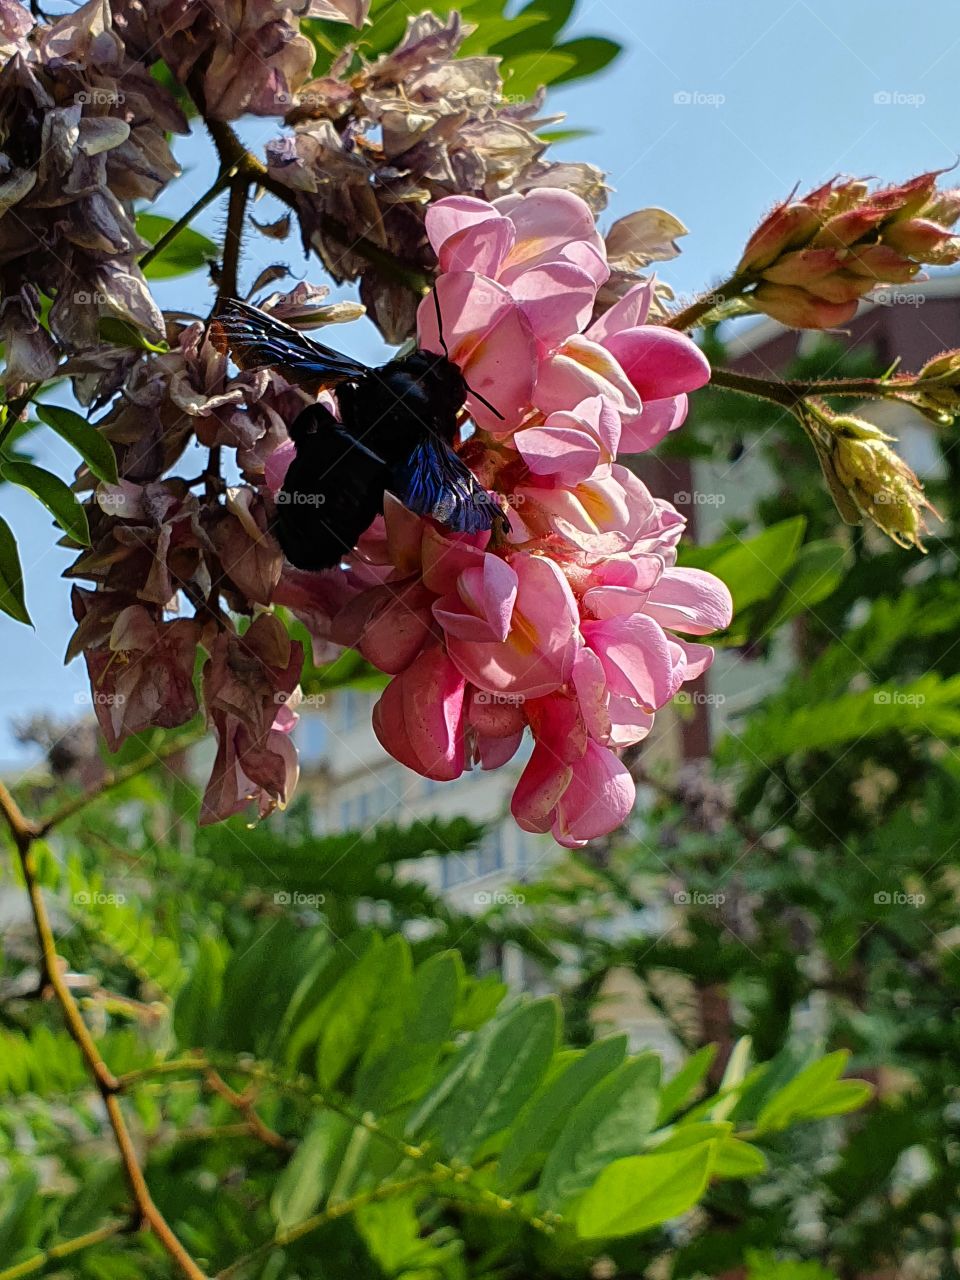 black wasp feeding from pink acacia